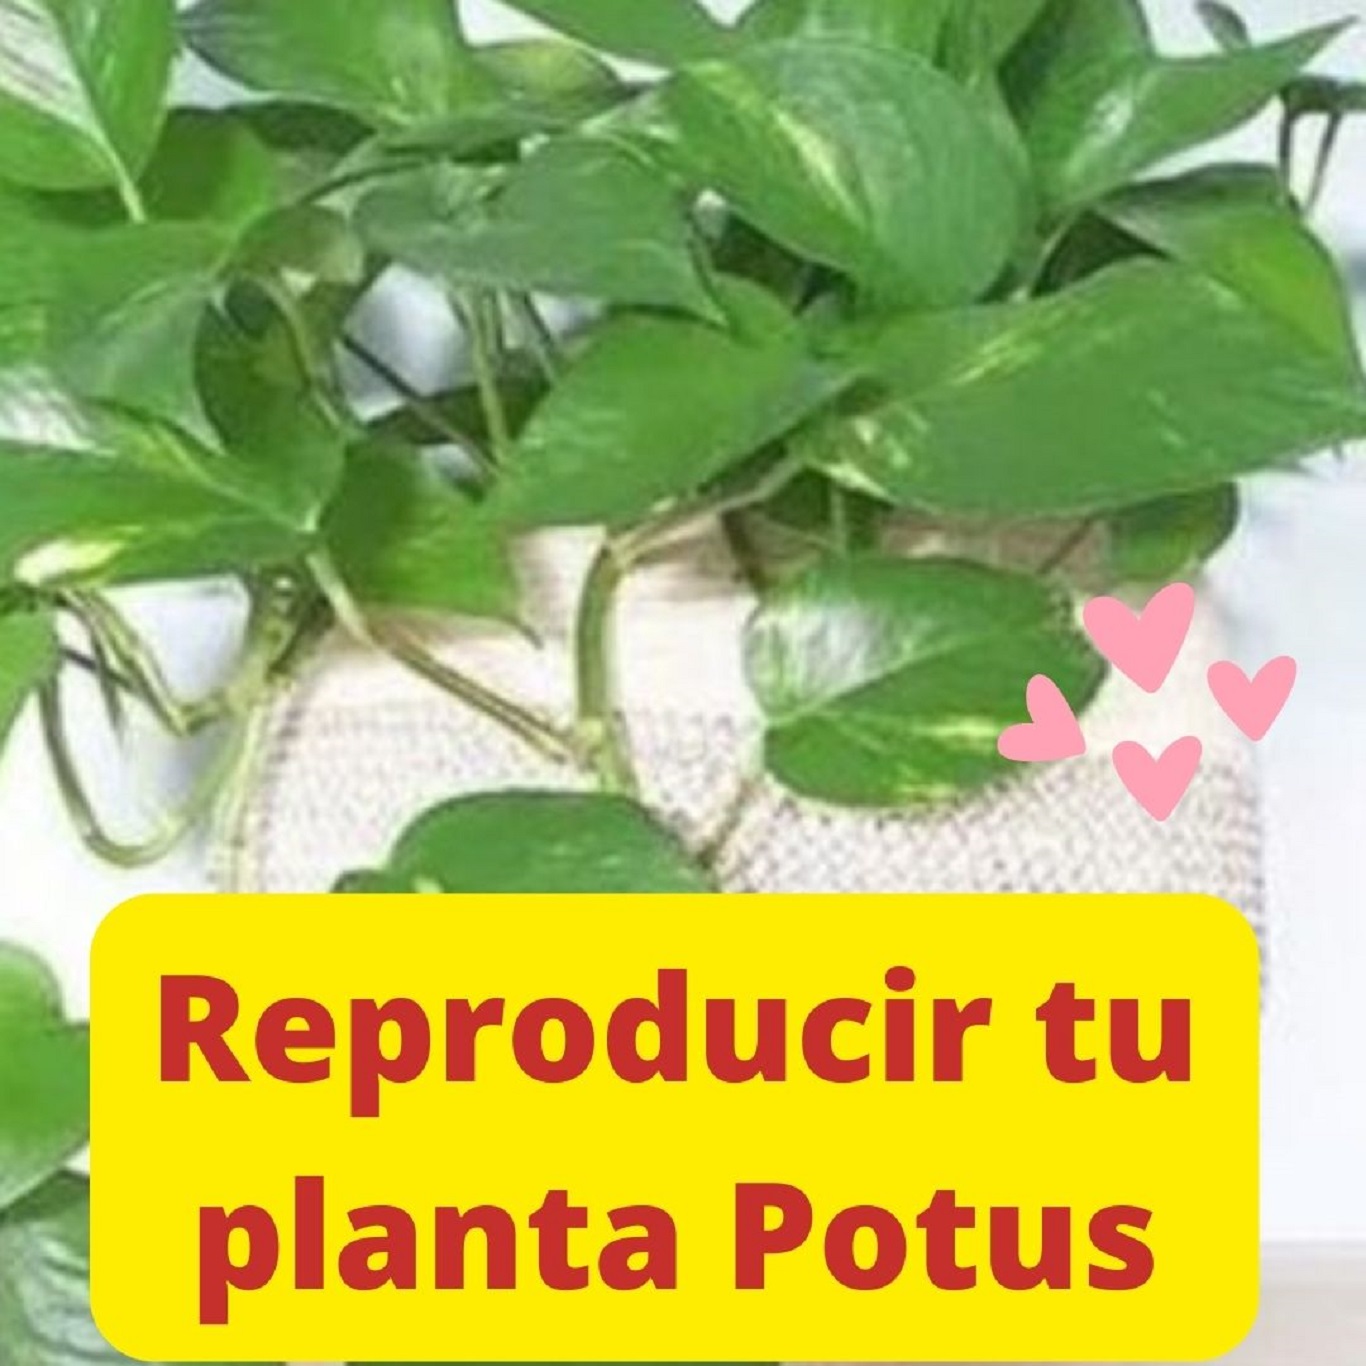 Los pasos para reproducir tu planta Potus - Mendoza Post